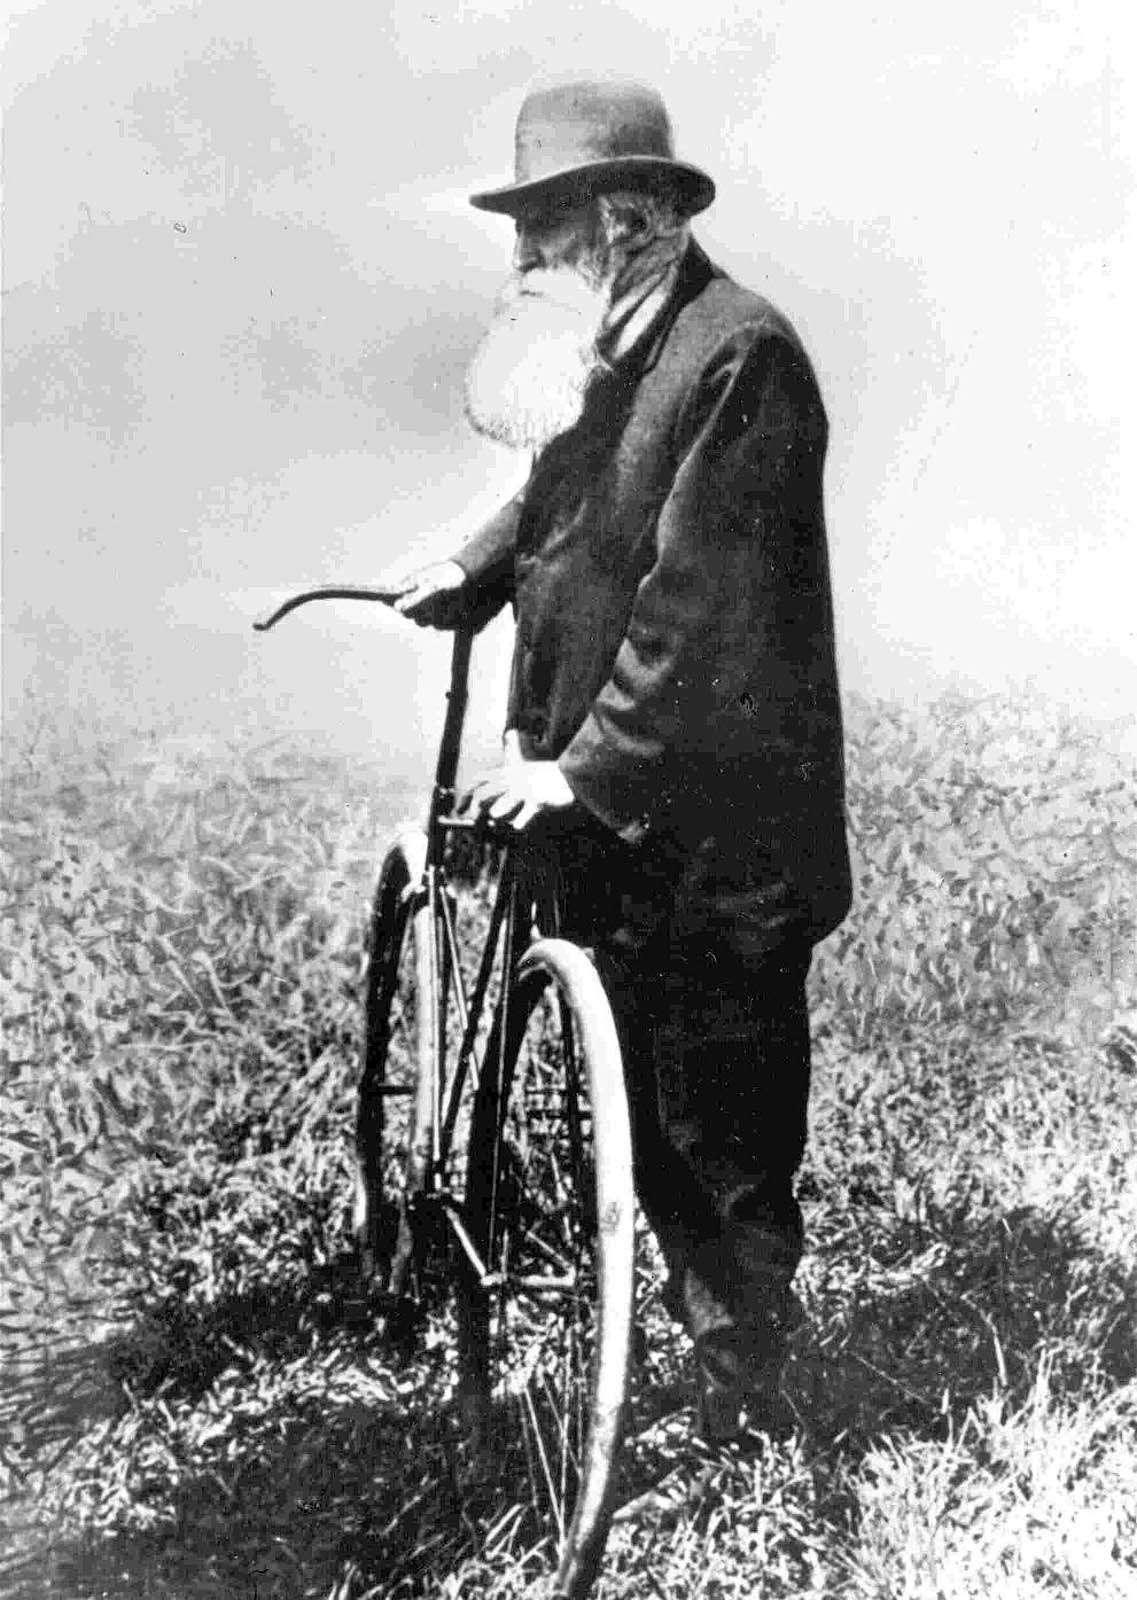 Первый патент на резиново-парусиновую шину получил Роберт Уильям Томсон в 1846 году. В 1888 году Джон Данлоп (на фото) надел на колеса велосипеда своего сына широкие обручи из садового шланга, надутые воздухом. Именно Данлоп считается отцом пневматической шины.